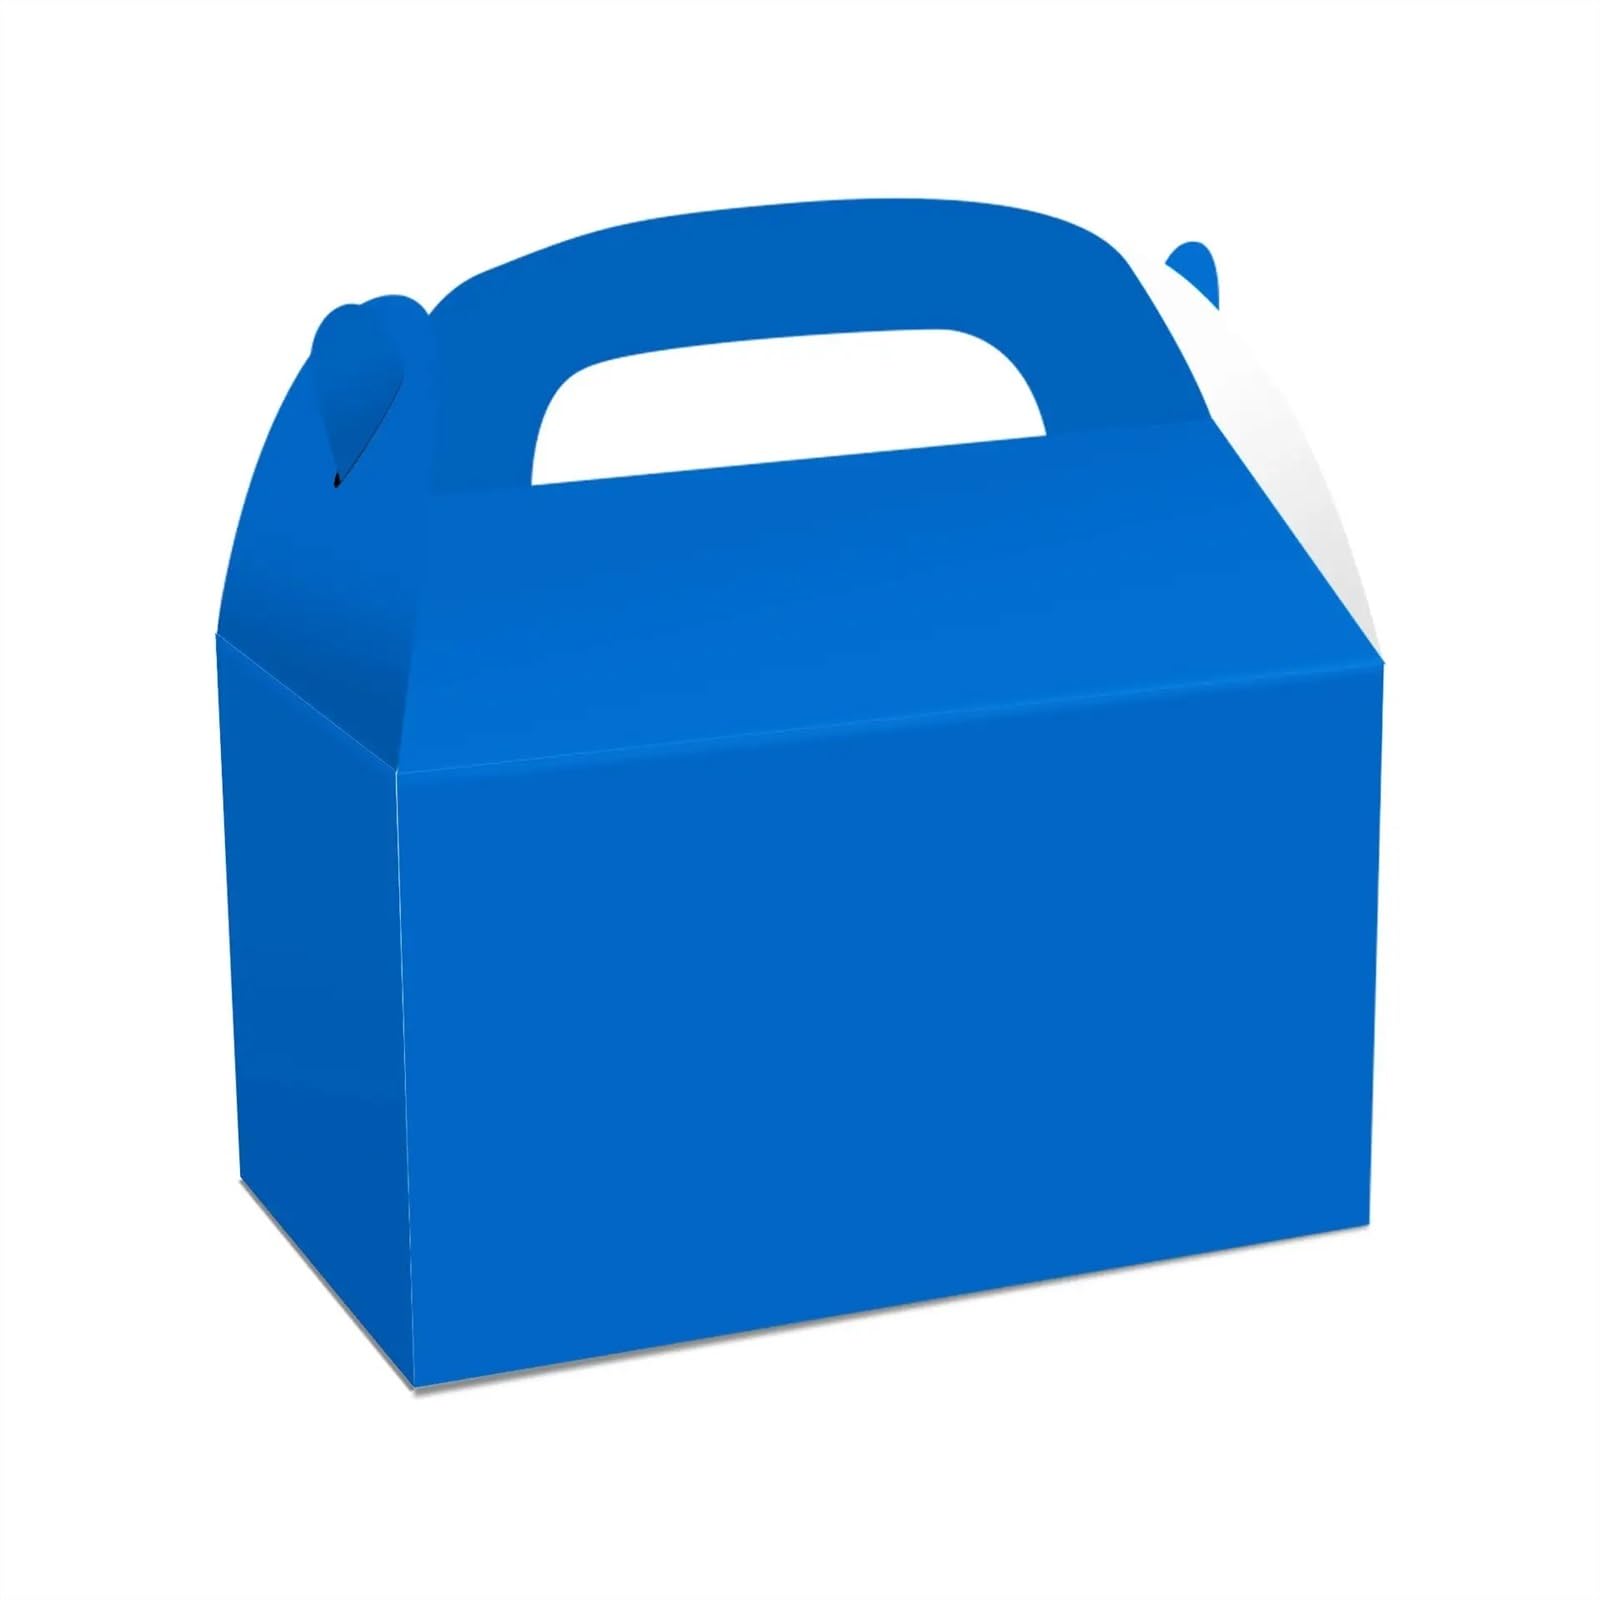 Tragbare Geschenkbox for Hochzeit, Geburtstag, Willkommensparty, Geschenkverpackung, kreative Lunchbox, Süßigkeiten (Color : Blue, Size : 50PCS_16X9.5X9.5CM)